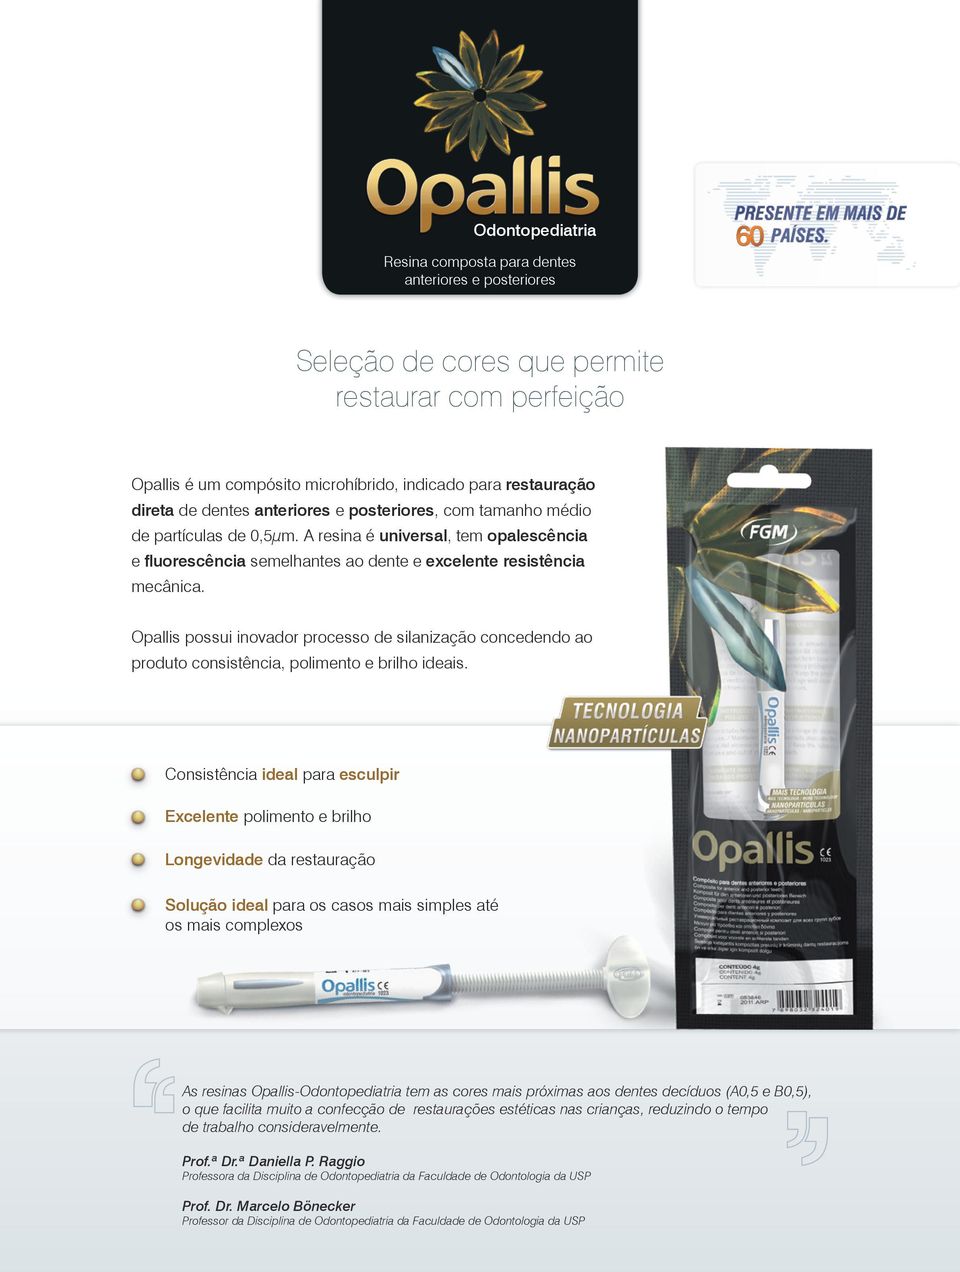 Opallis possui inovador processo de silanização concedendo ao produto consistência, polimento e brilho ideais.